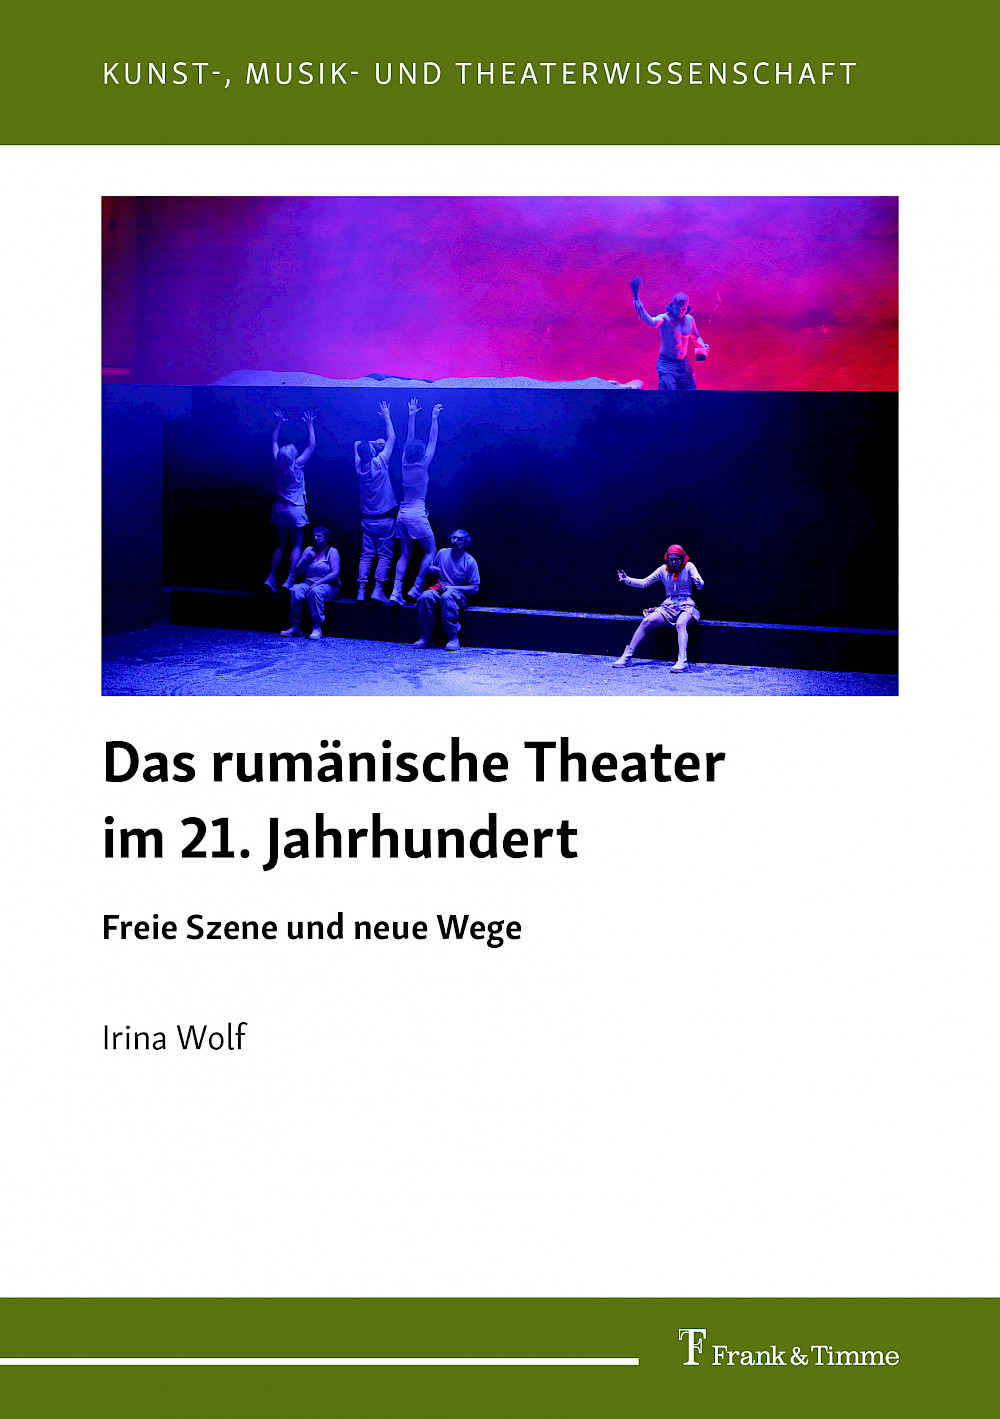 Buchvorstellung mit Irina Wolf im Schauspielhaus Salzburg